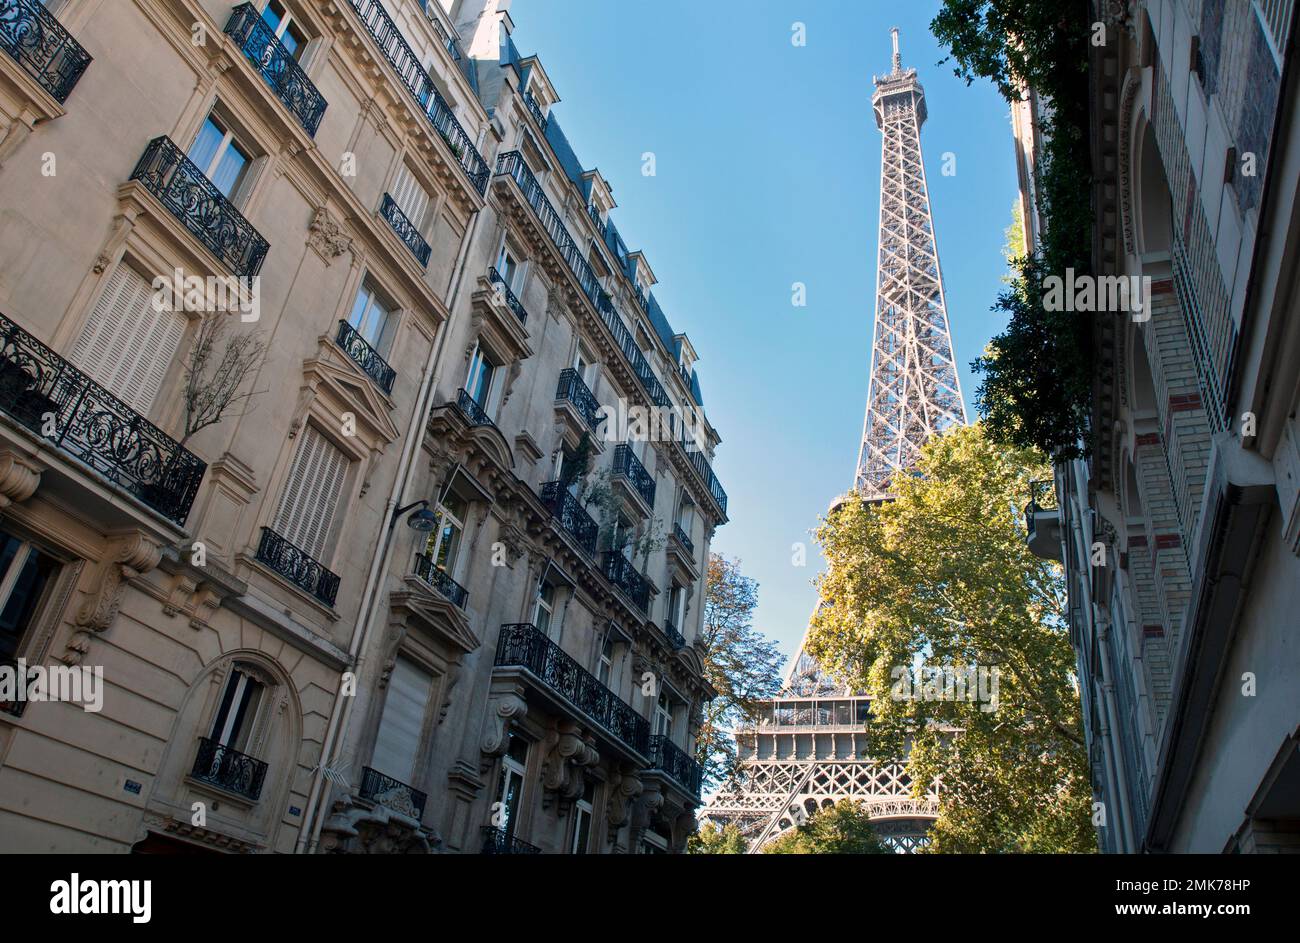 Der Eiffelturm erhebt sich hinter prunkvollen Wohngebäuden am Ende der Rue de l'Université im 7. Arrondissement von Paris. Stockfoto